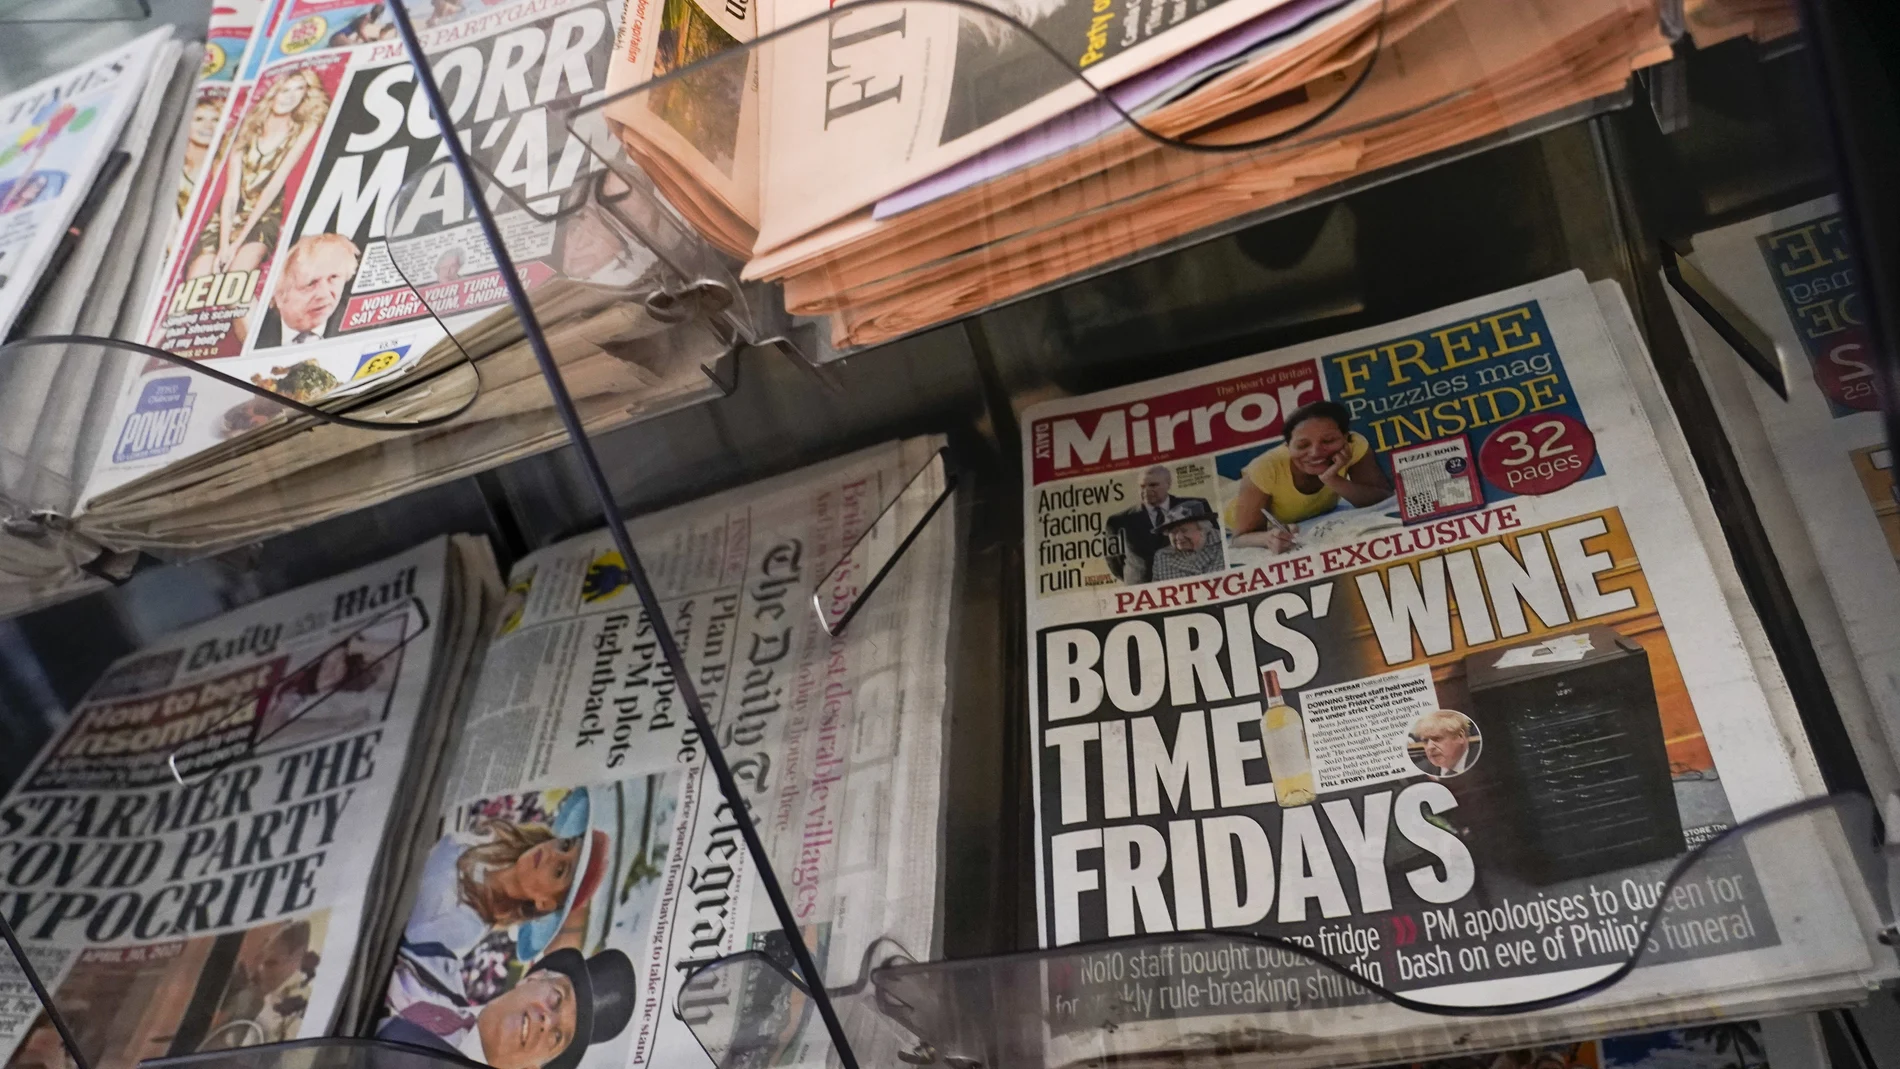 La portada de los diarios británicos con la exclusiva de "los vinos de los viernes" hoy